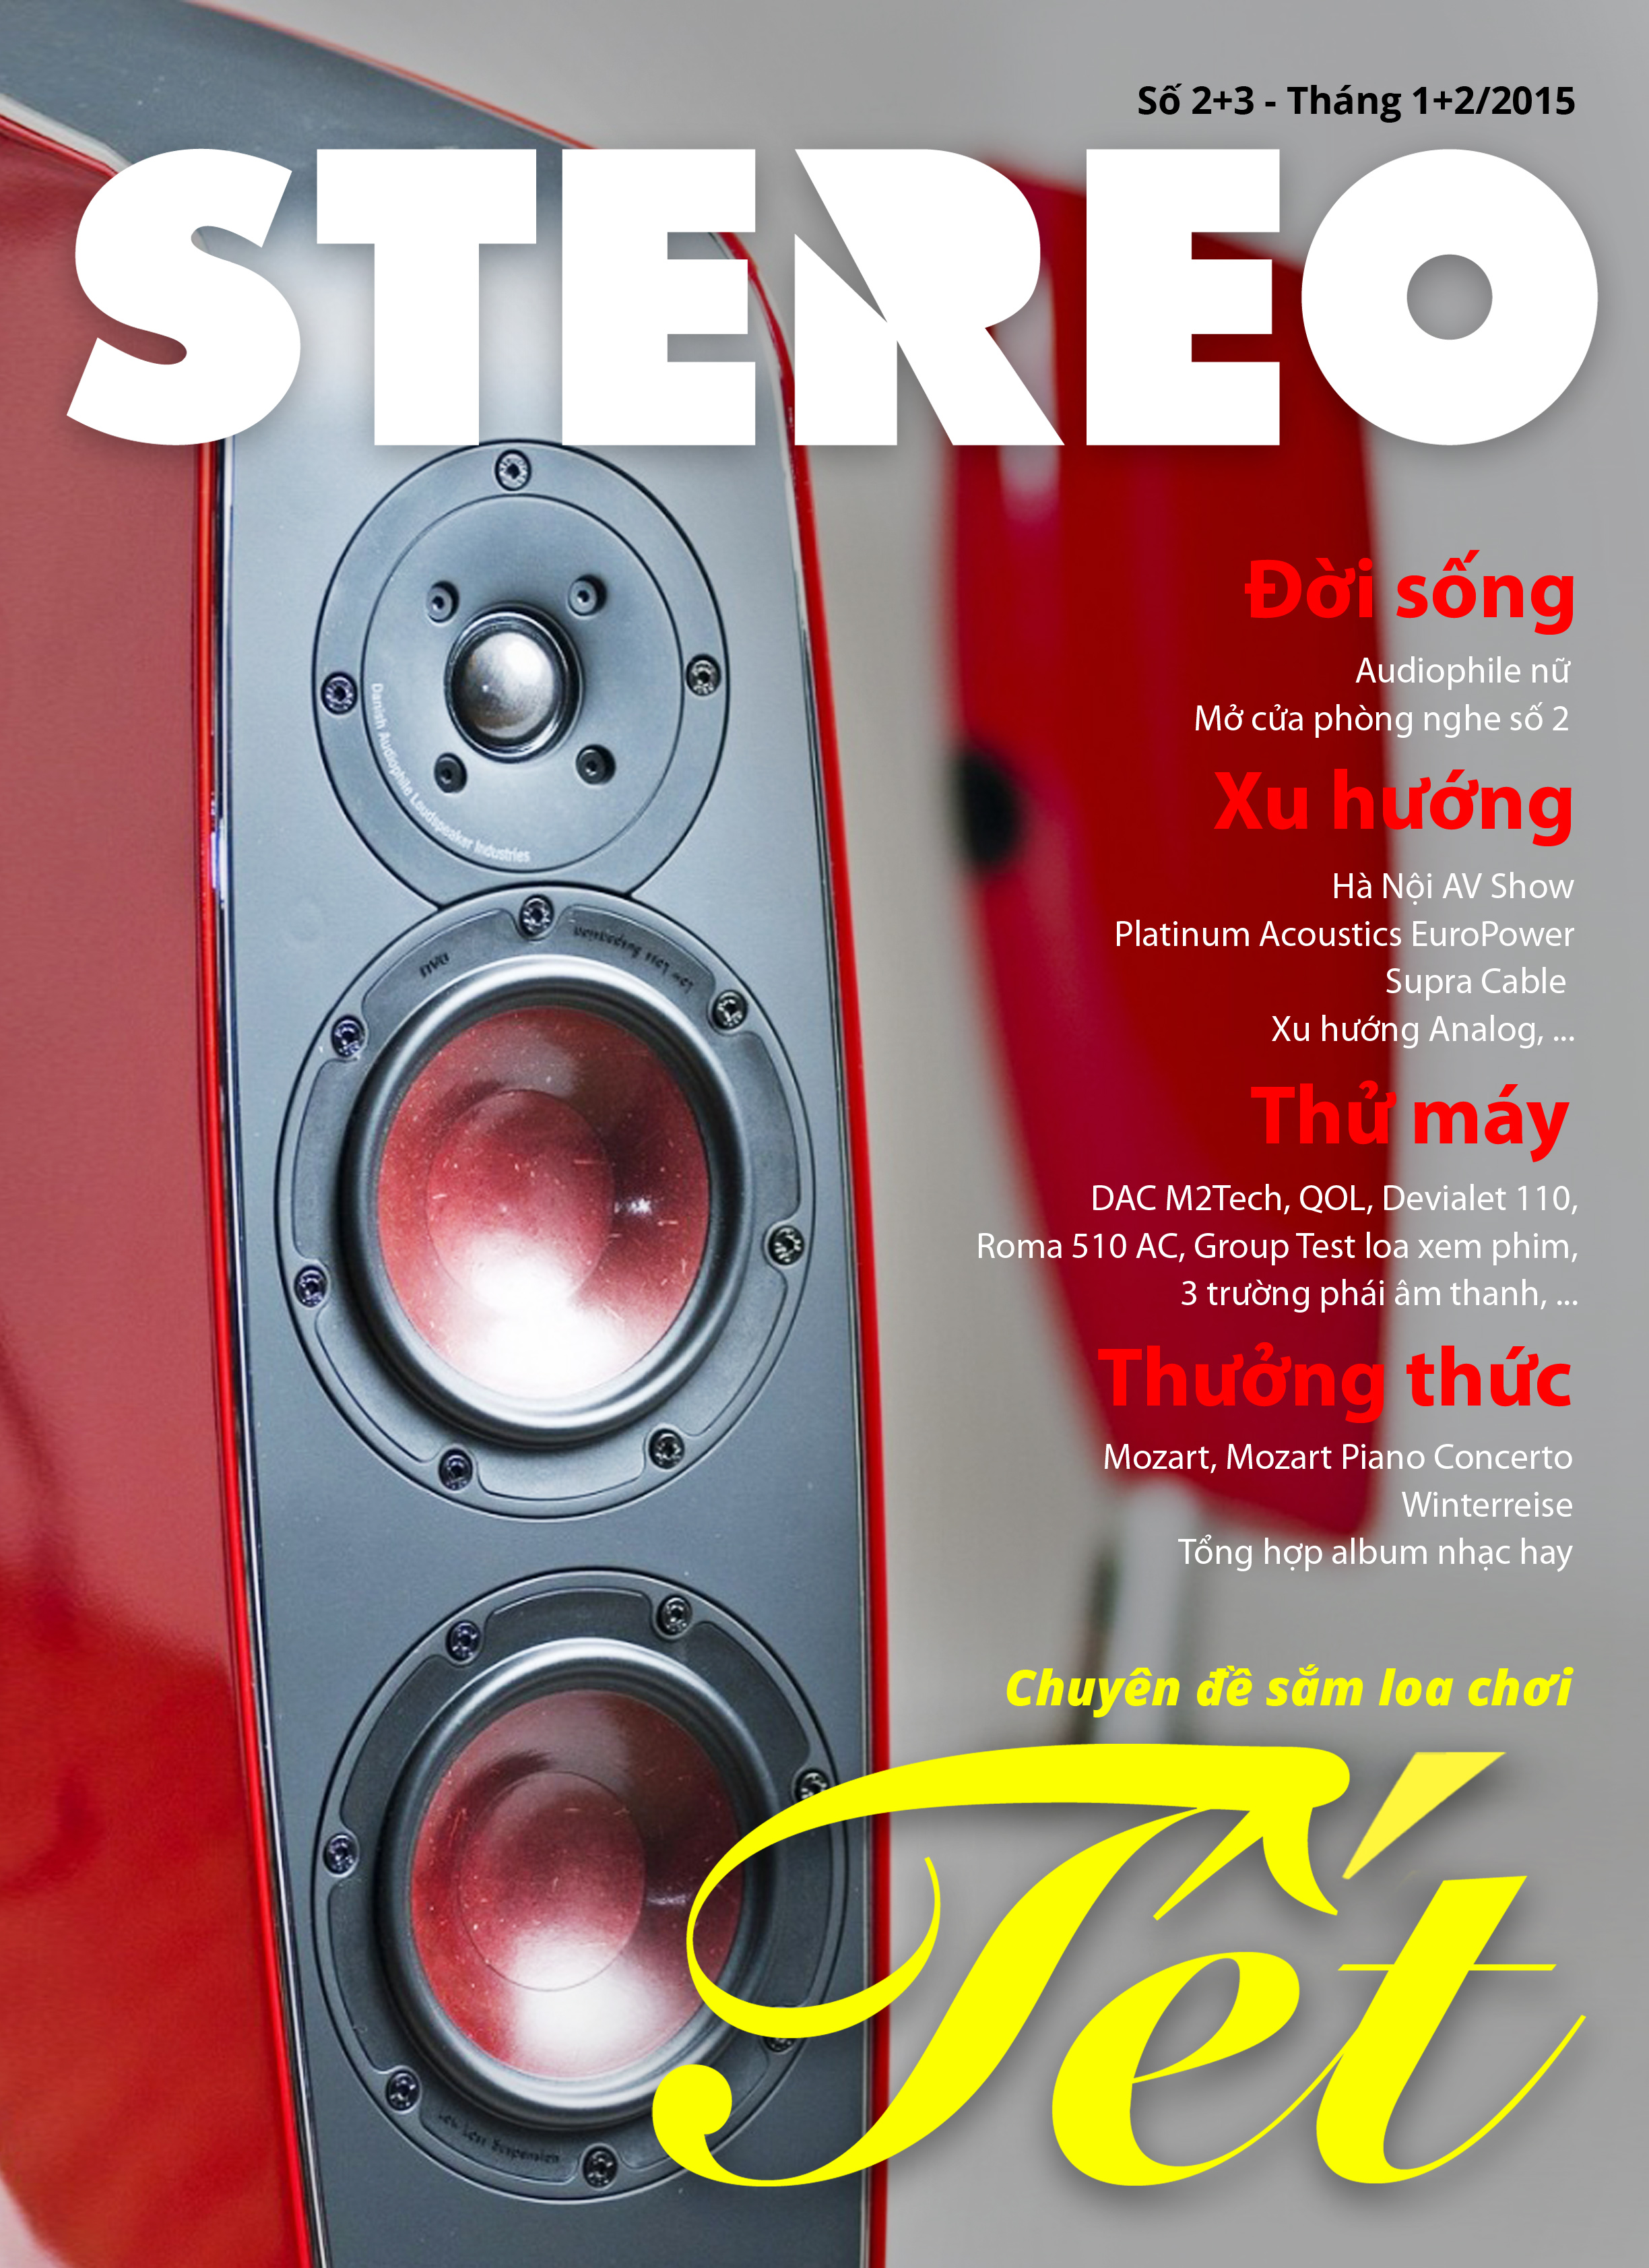 Stereo Channel ra mắt tạp chí đặc biệt số Tết âm lịch